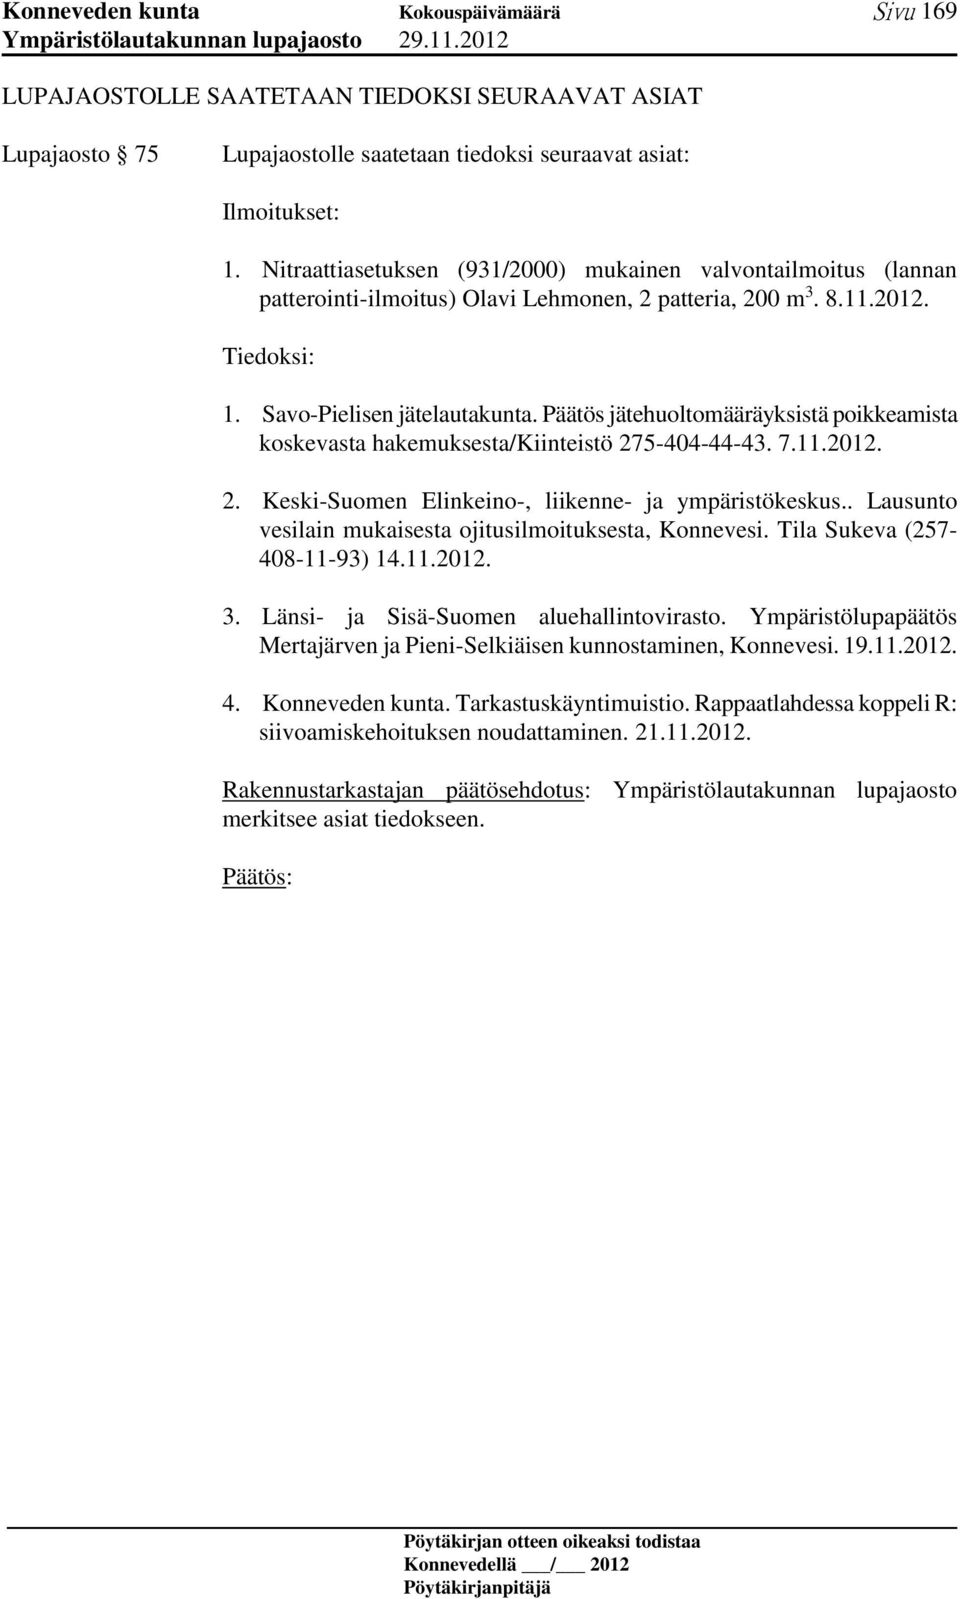 Päätös jätehuoltomääräyksistä poikkeamista koskevasta hakemuksesta/kiinteistö 275-404-44-43. 7.11.2012. 2. Keski-Suomen Elinkeino-, liikenne- ja ympäristökeskus.